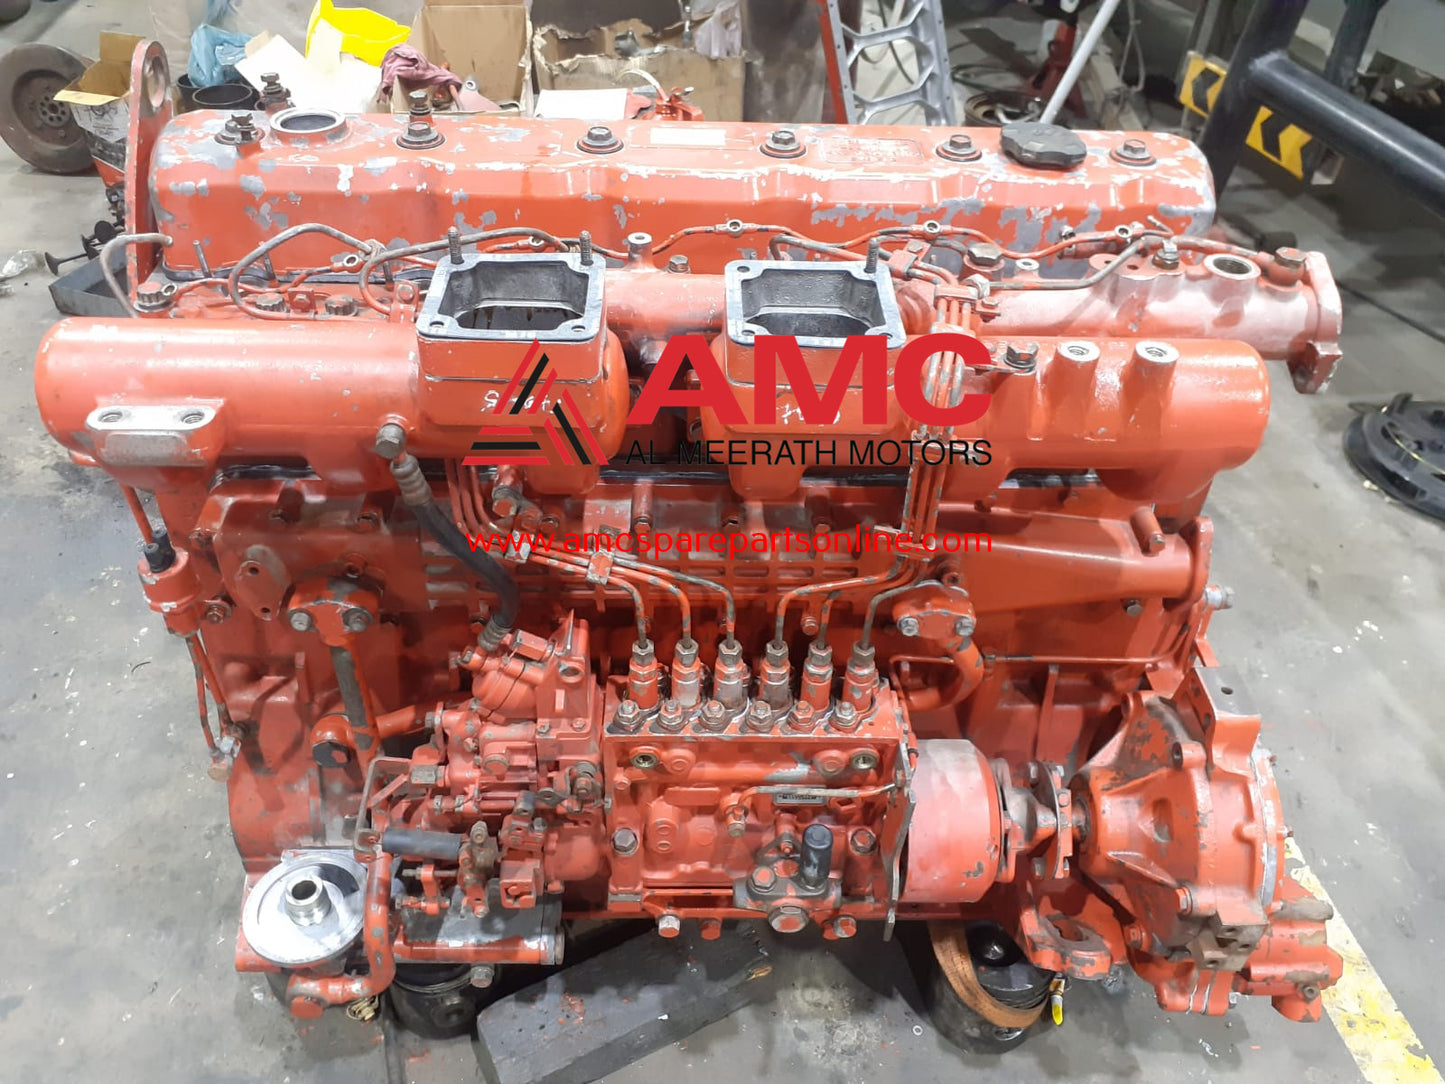 USED Doosan De12tis engine assembly - 3101100310